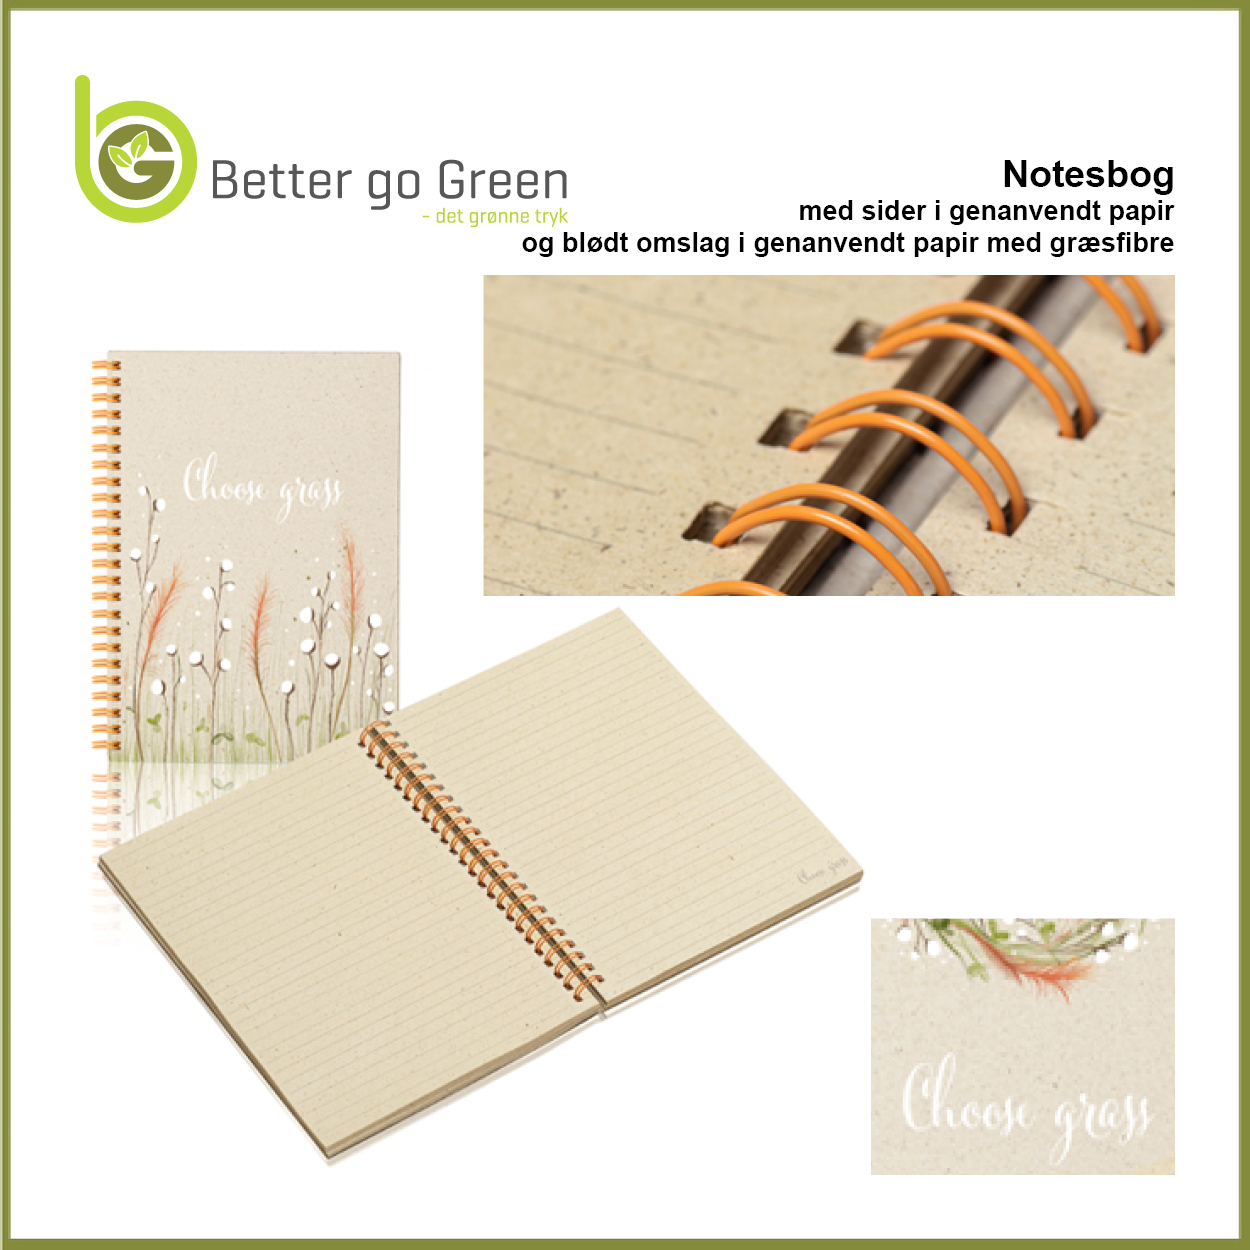 Notesbøger i GRÆSpapir med blødt omslag får du hos BetterGoGreen